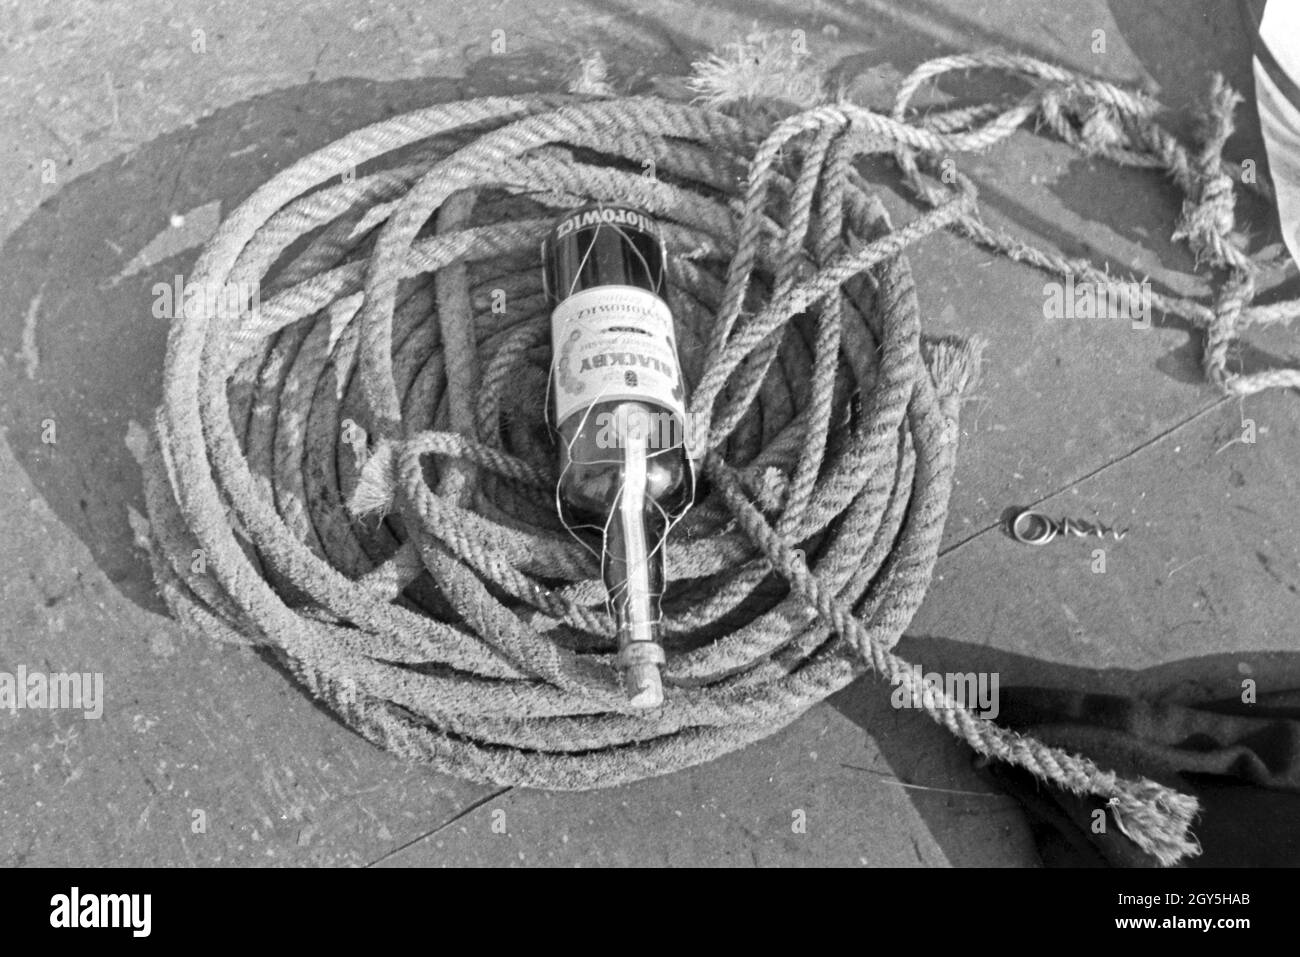 Eine Flasche Rum zwischen den Tauen auf Deck, Deutschland 1930er Jahre. A bottle of rum between ropes on deck, Germany 1930s. Stock Photo